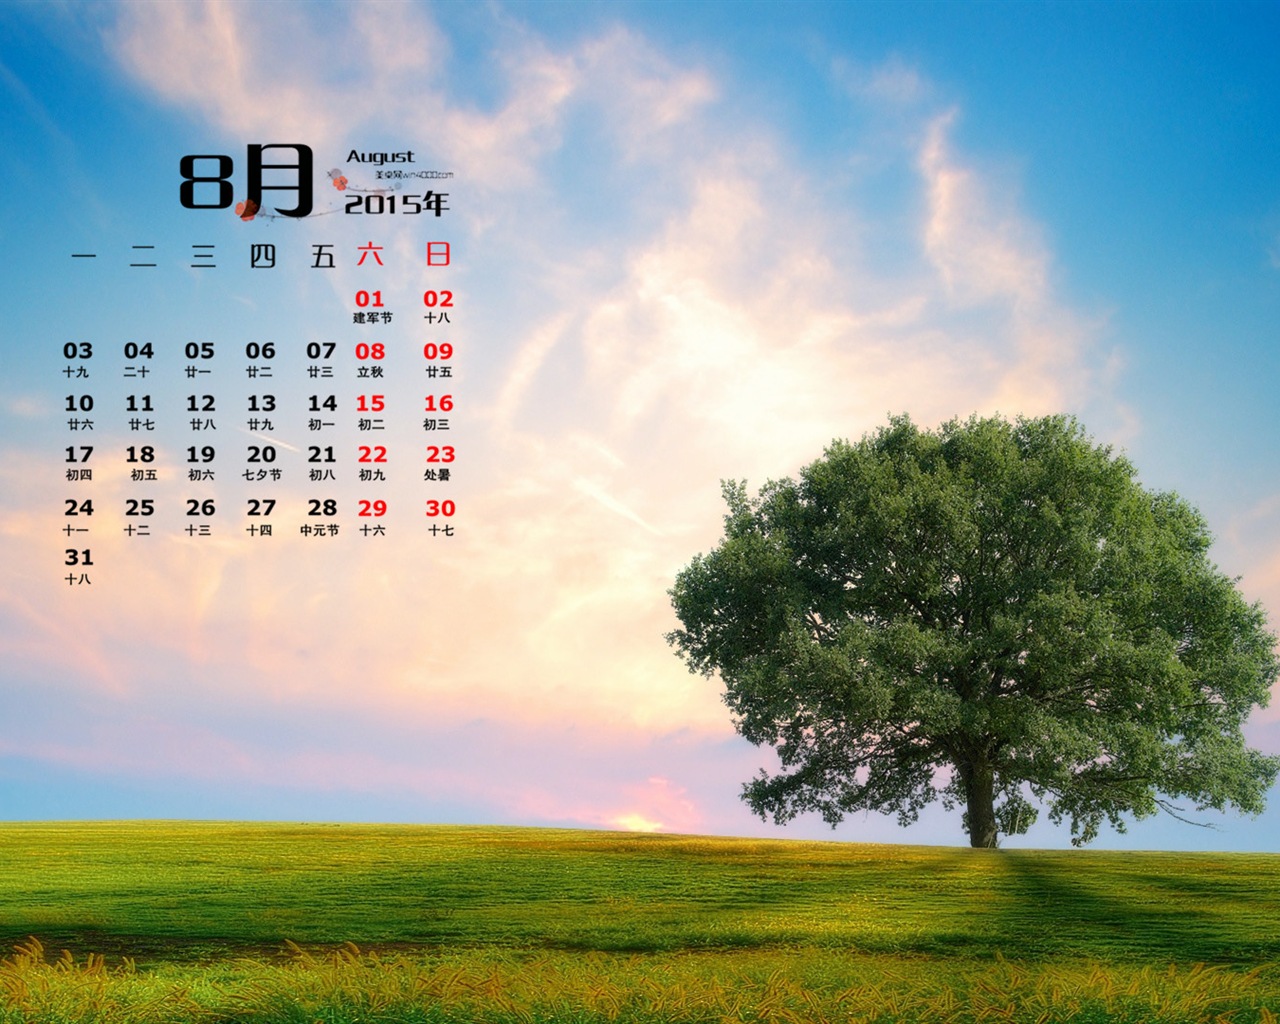 August 2015 calendar wallpaper (1) #8 - 1280x1024